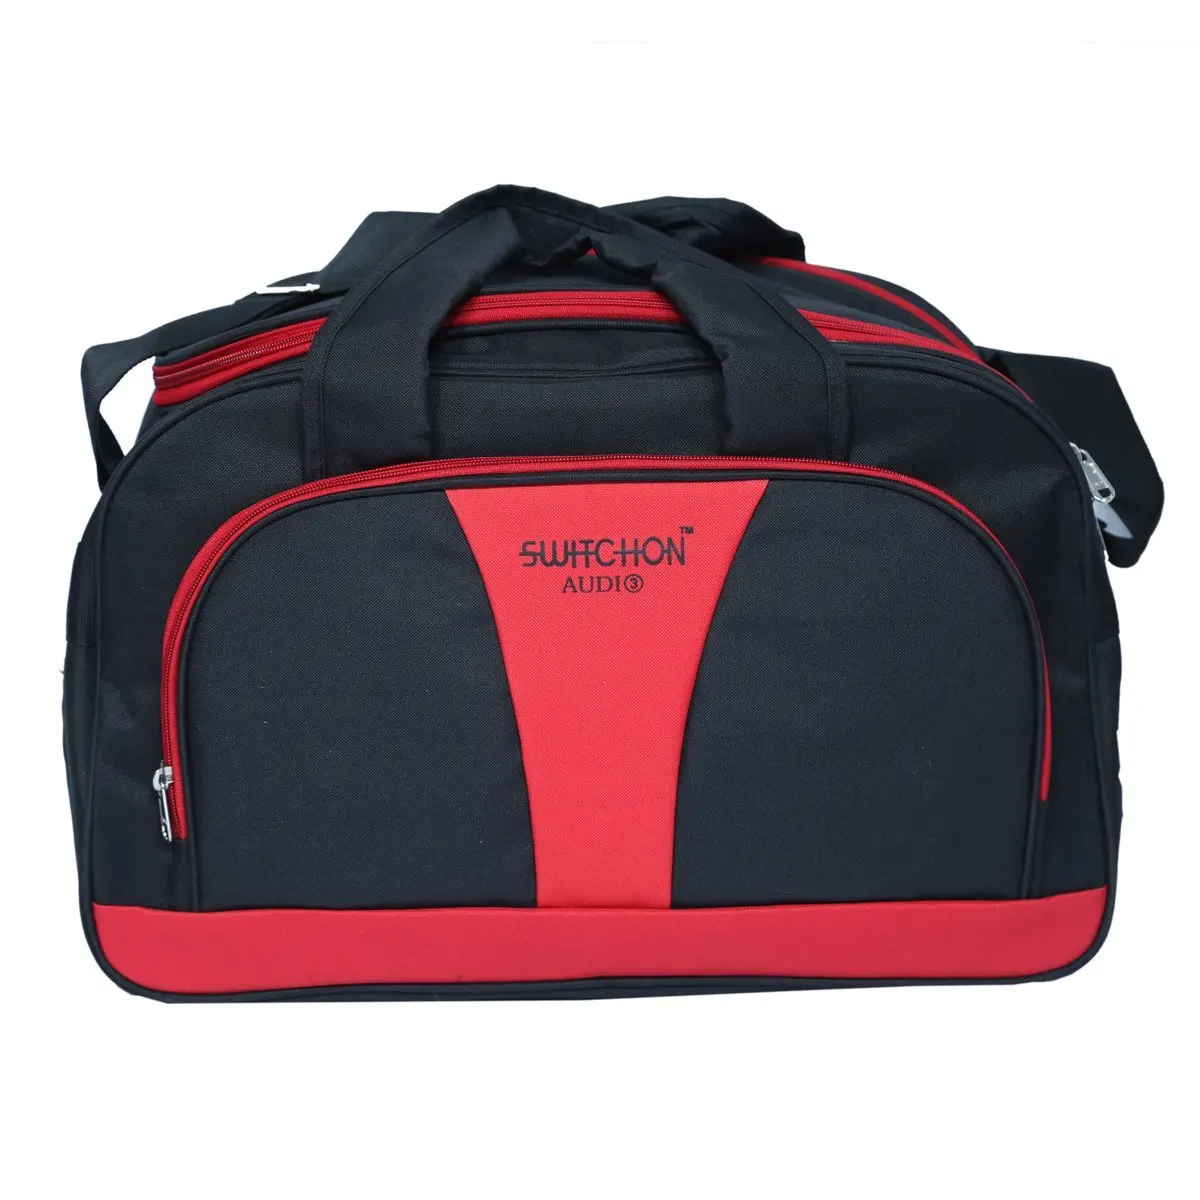 Cheap Duffle Weekender Bag, find Duffle Weekender Bag deals on line at ...